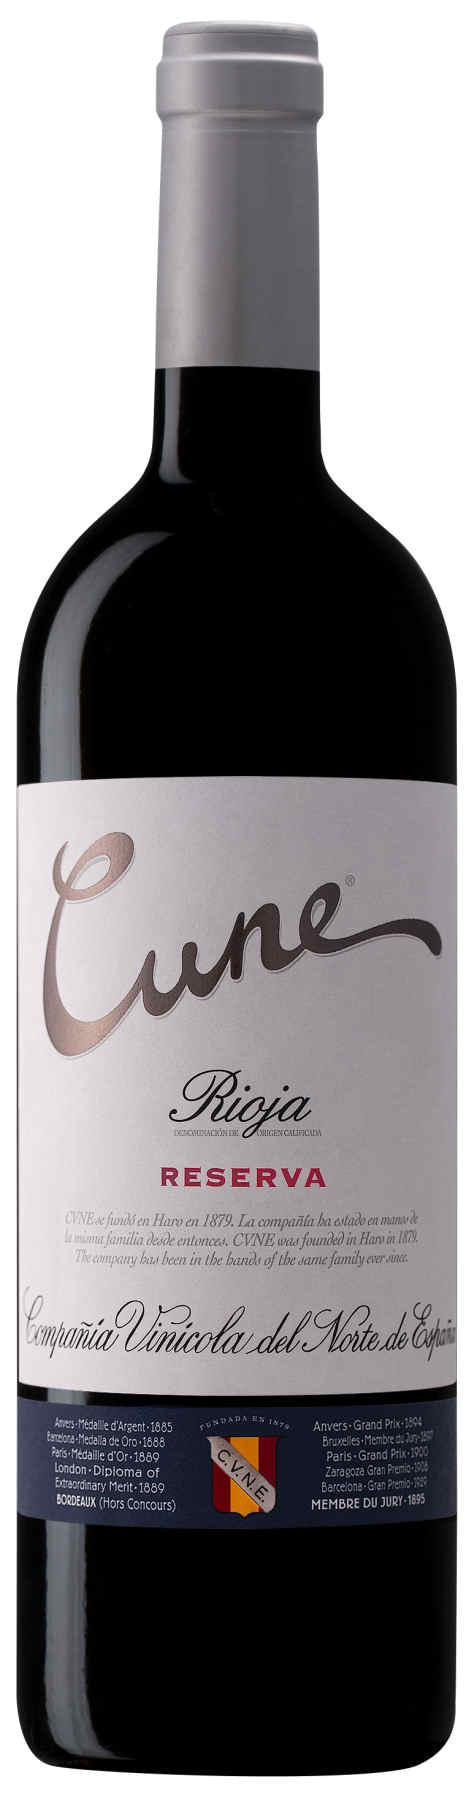 CUNE Rioja Reserva